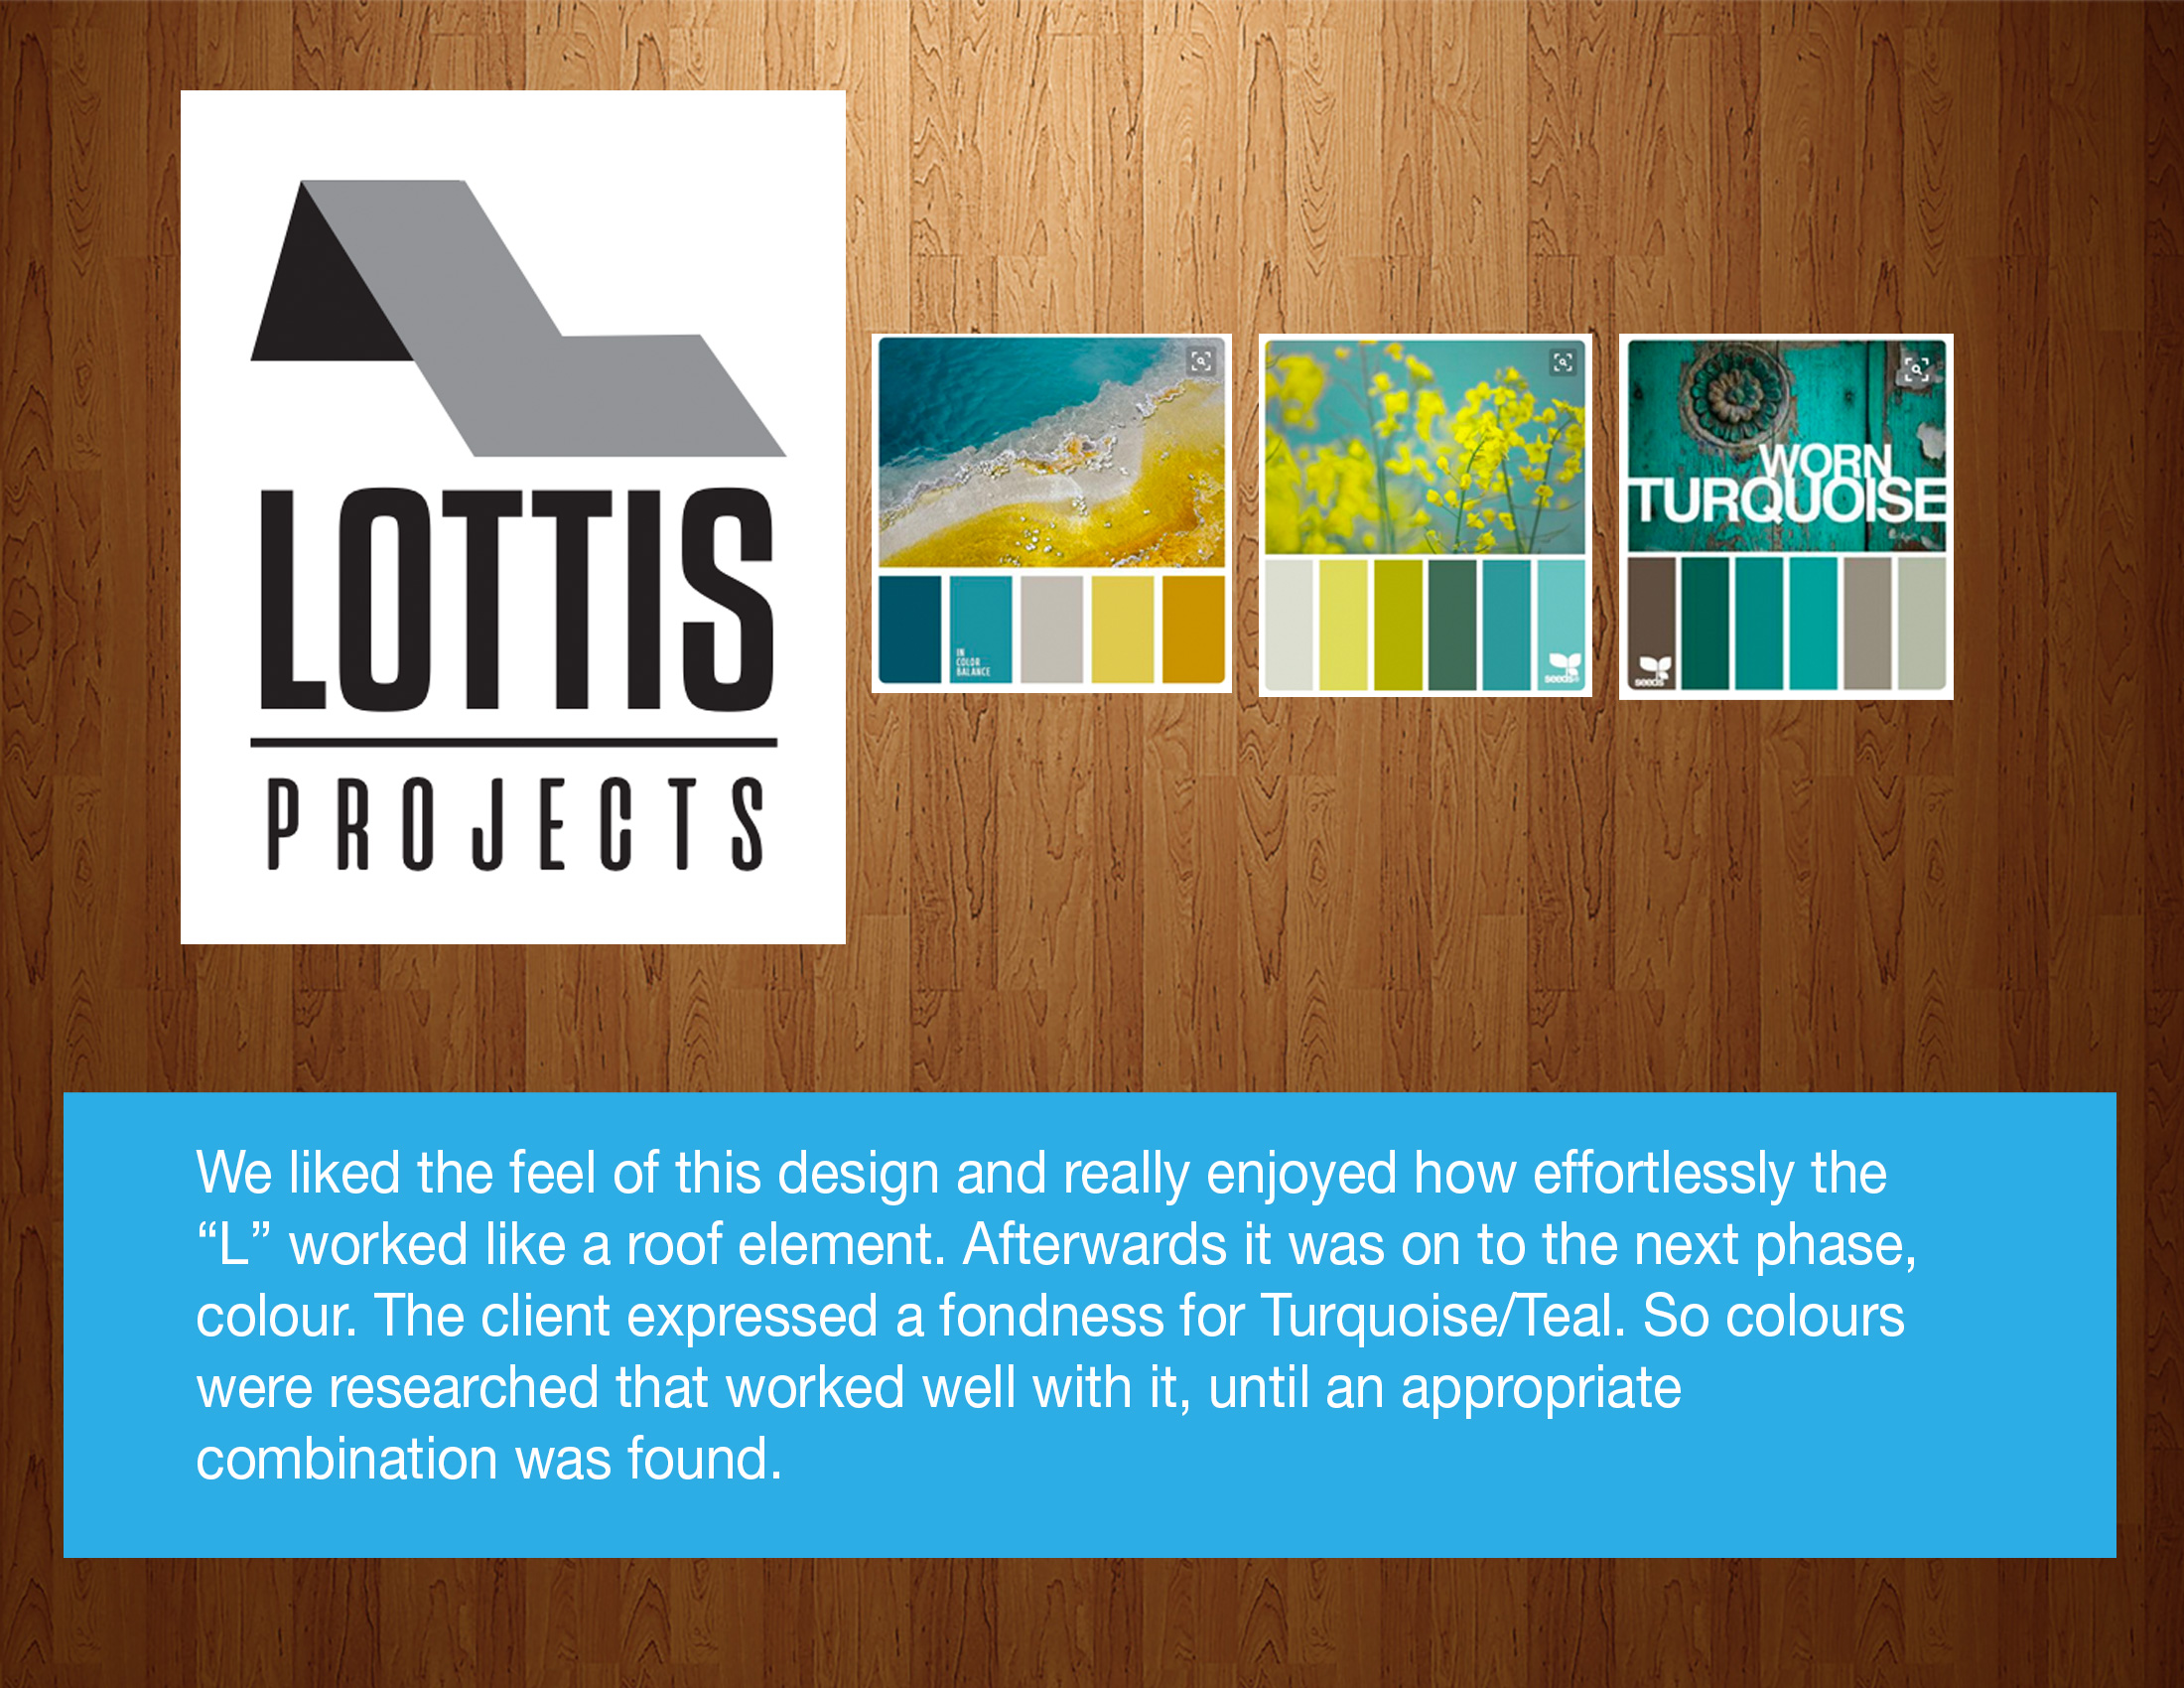 Portfolio-design-Lottis4-2018.jpg